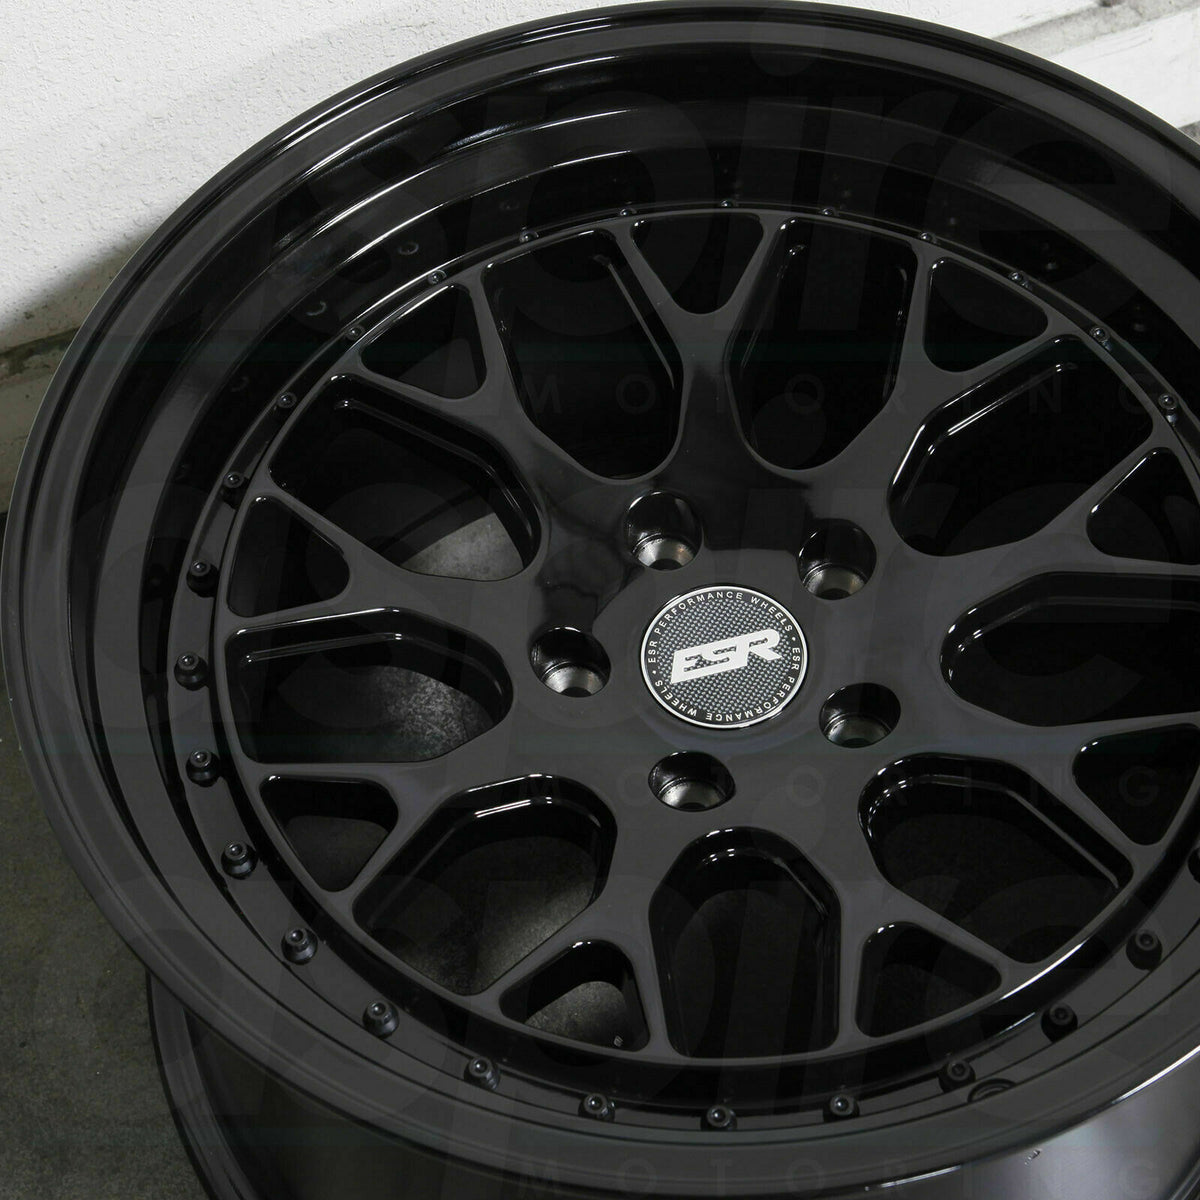 ESR CS11 Gloss Black Wheels 18x9.5 / 18x10.5 +22 5x114.3 18 Inch Rims Set 4